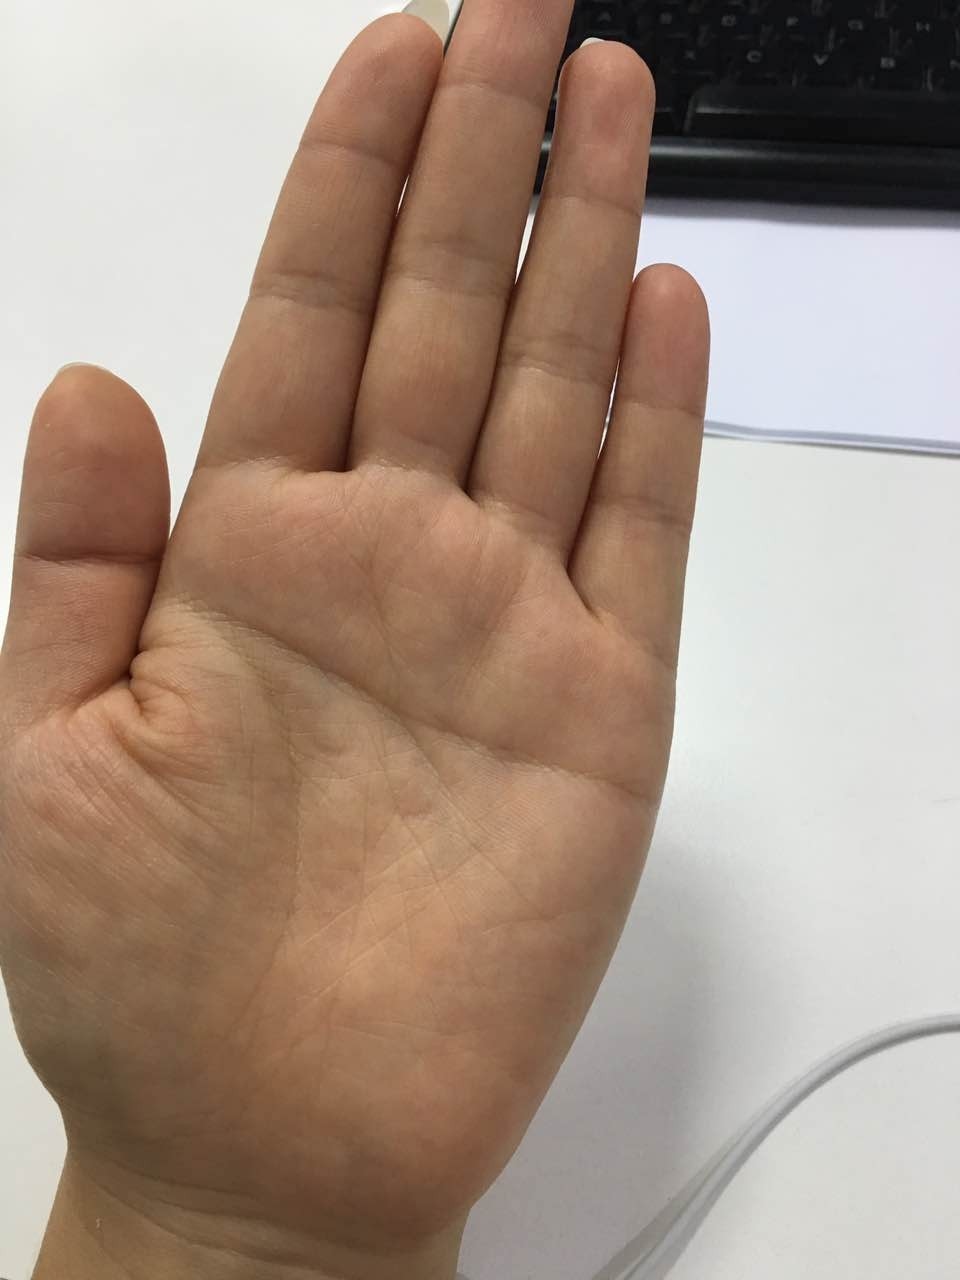 手掌上有痣代表什么含义？手心有意味着的是啥？